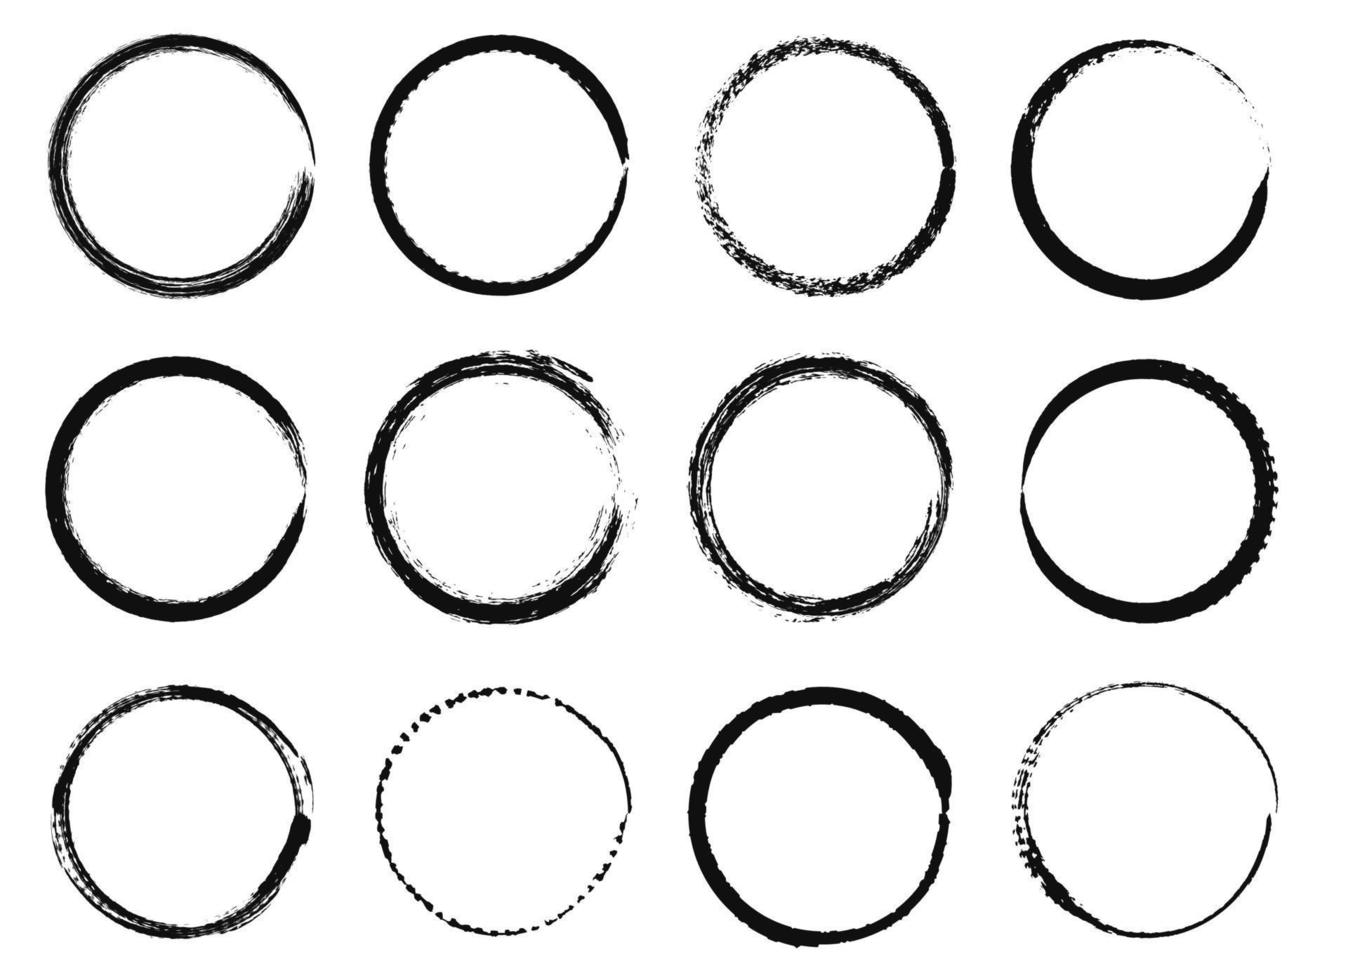 grunge cirkel ramar. svart bläck borsta runda former, cirkulär ångest texturerad gränser. hand dragen grungy måla stroke cirklar vektor uppsättning